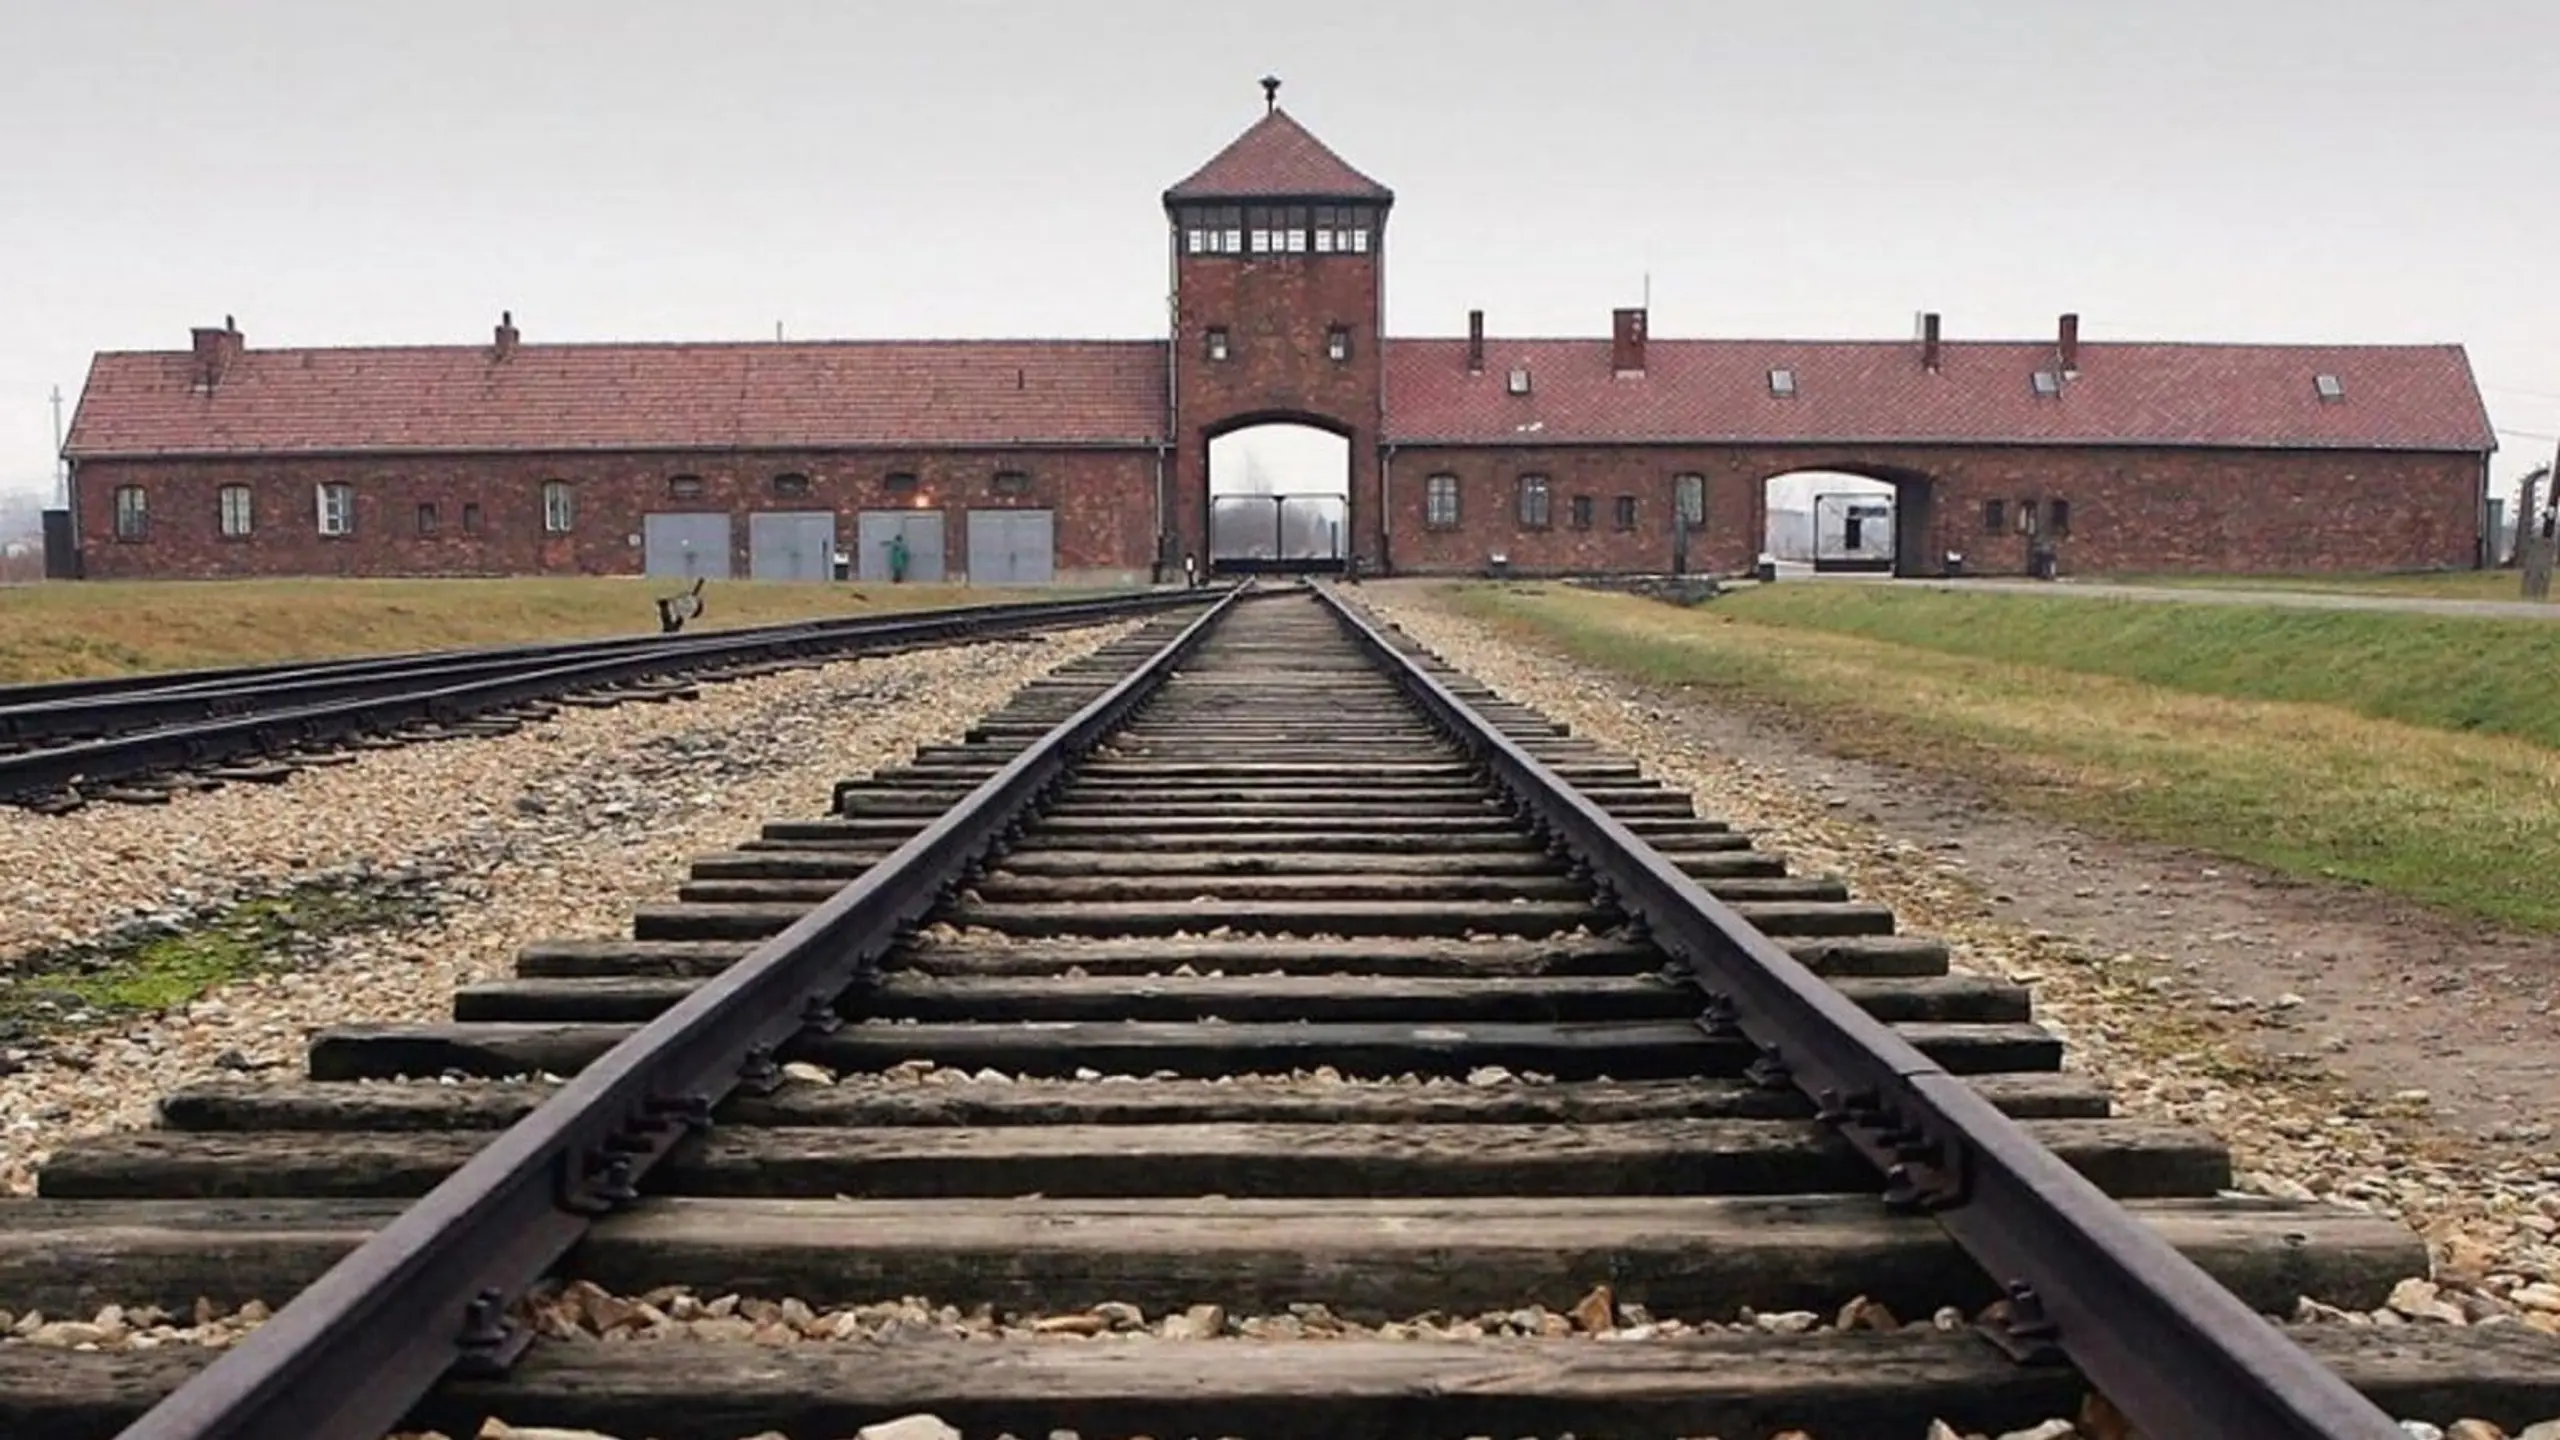 Der Frankfurter Auschwitz-Prozess